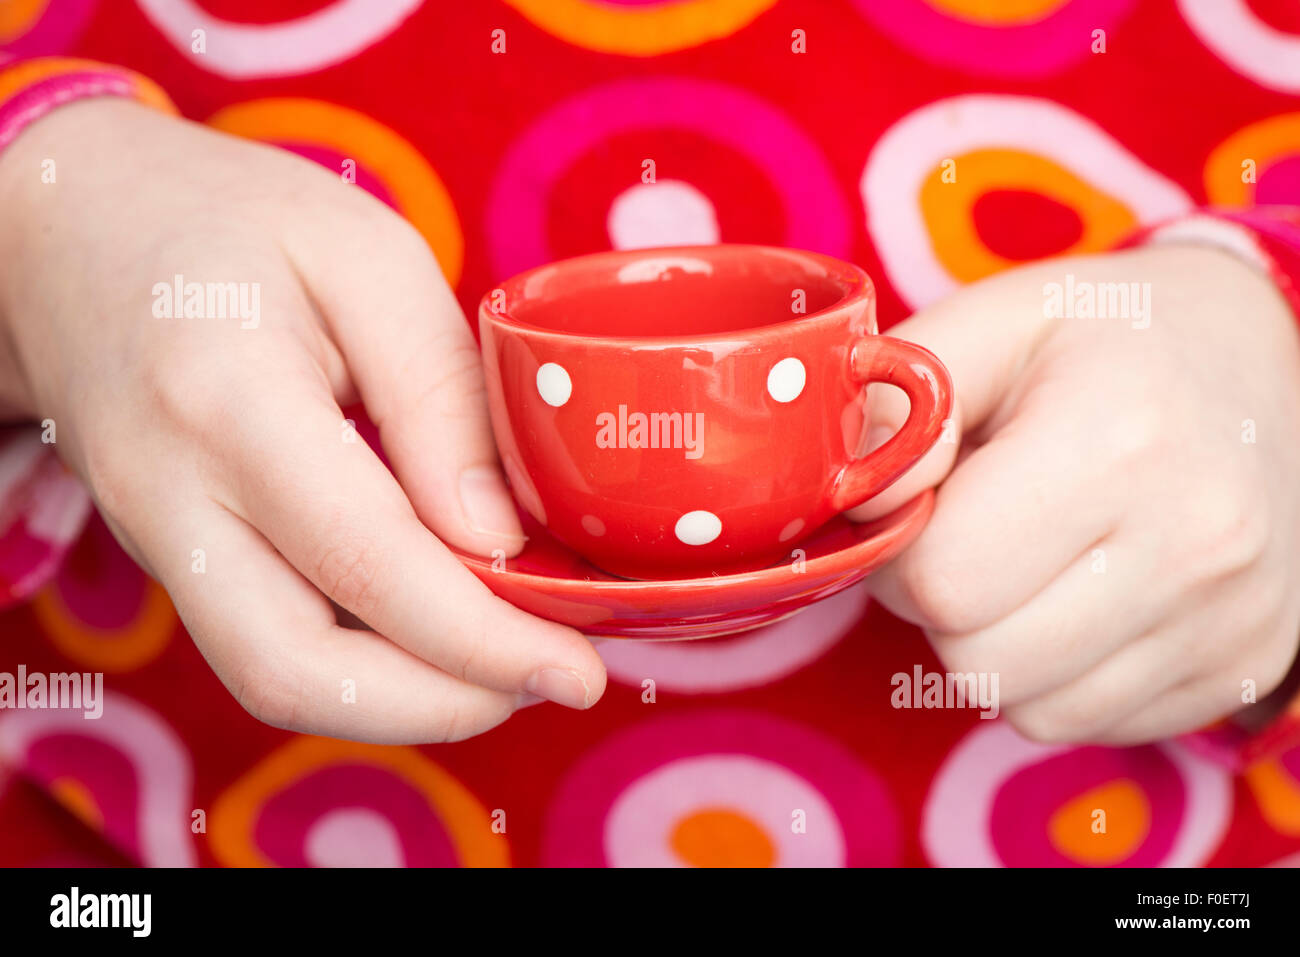 Little girl holding avec tasse de thé de jouer teaparty. Close up de mains d'enfant. L'image montre un adorable moment de jeux des enfants innocents. Banque D'Images